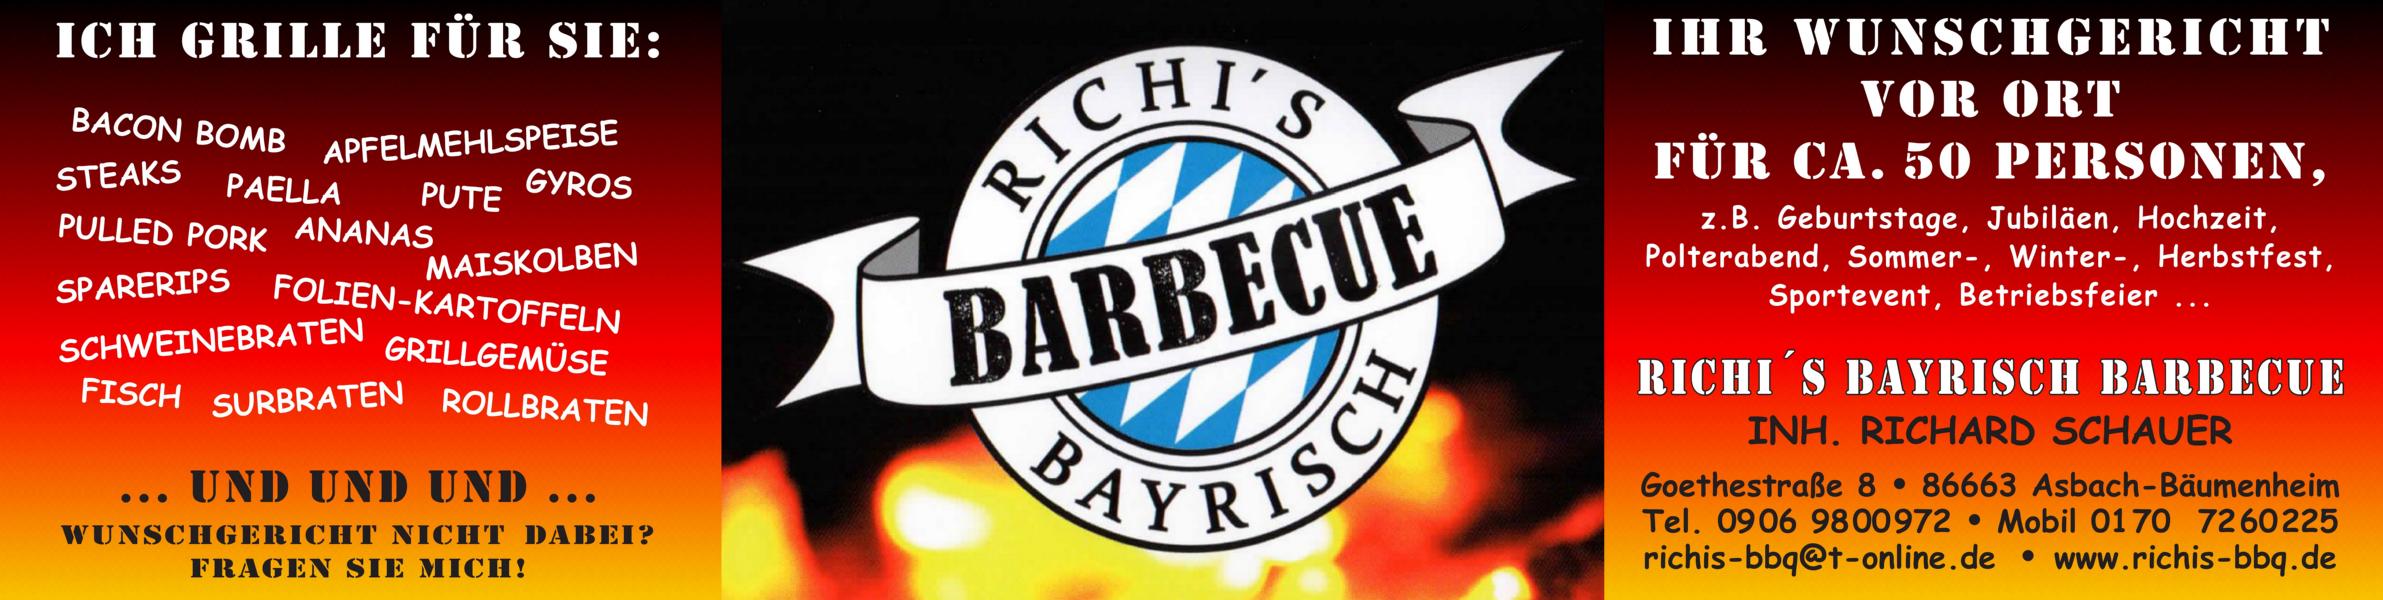 Richi's Bayrisch Barbecue